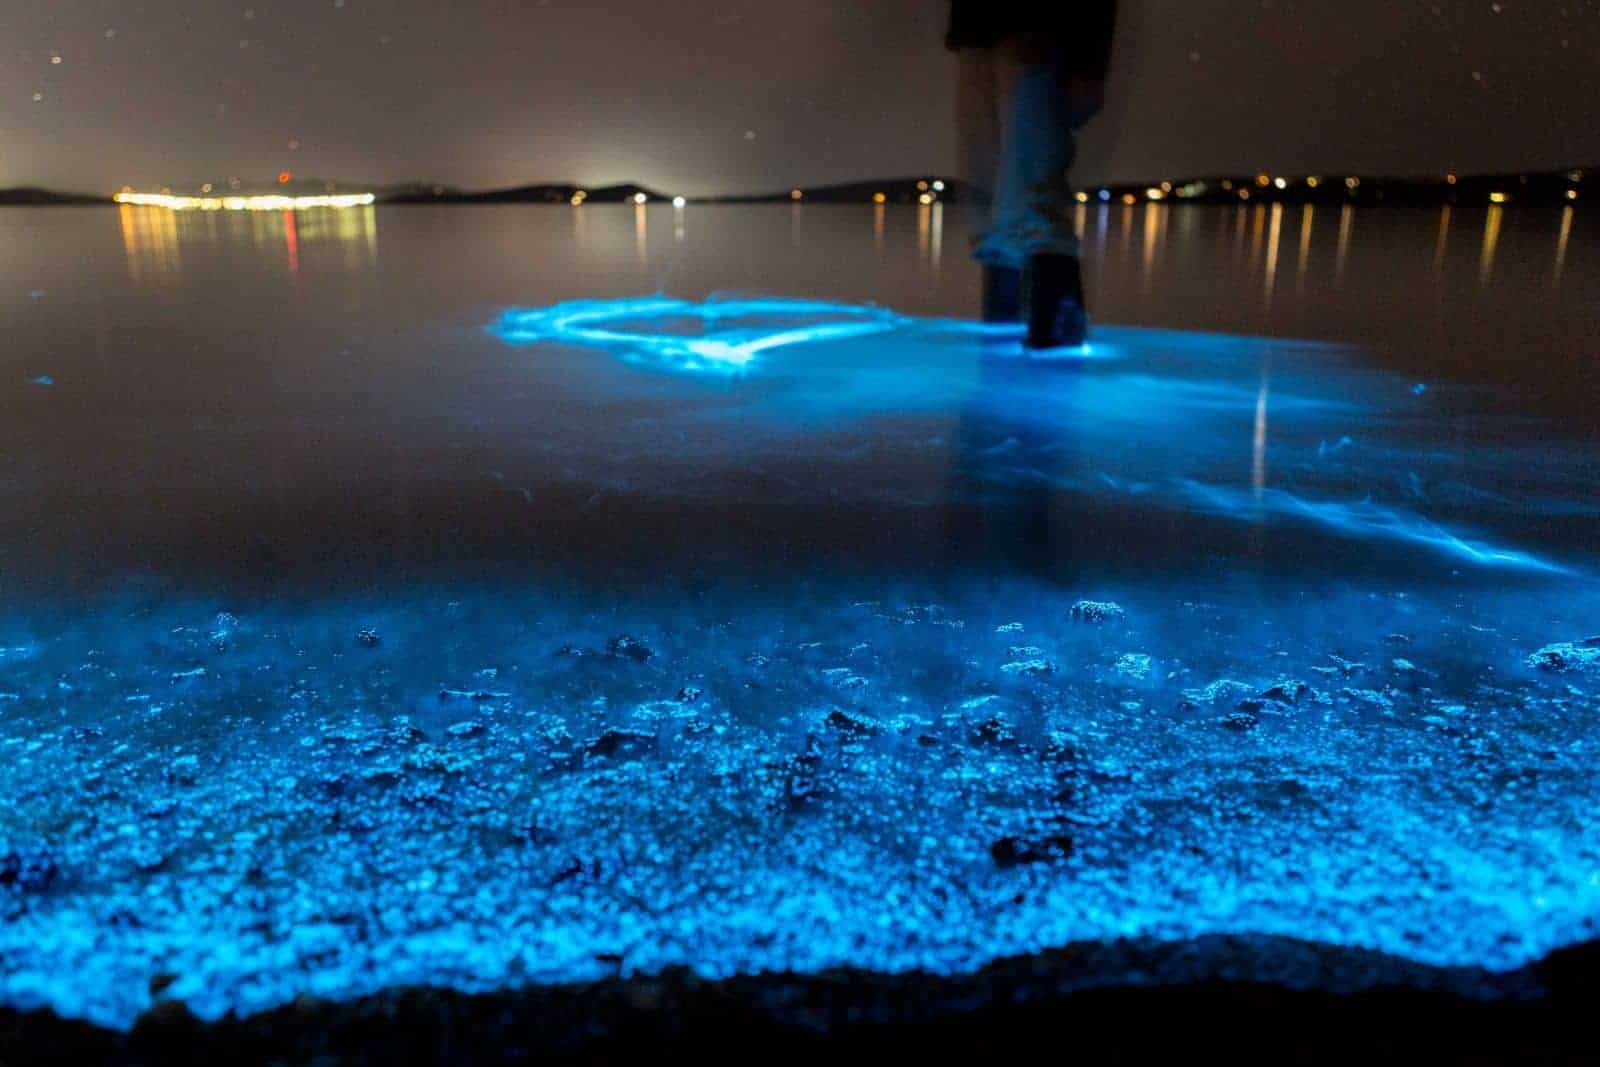 bioluminescence kayak tour auckland